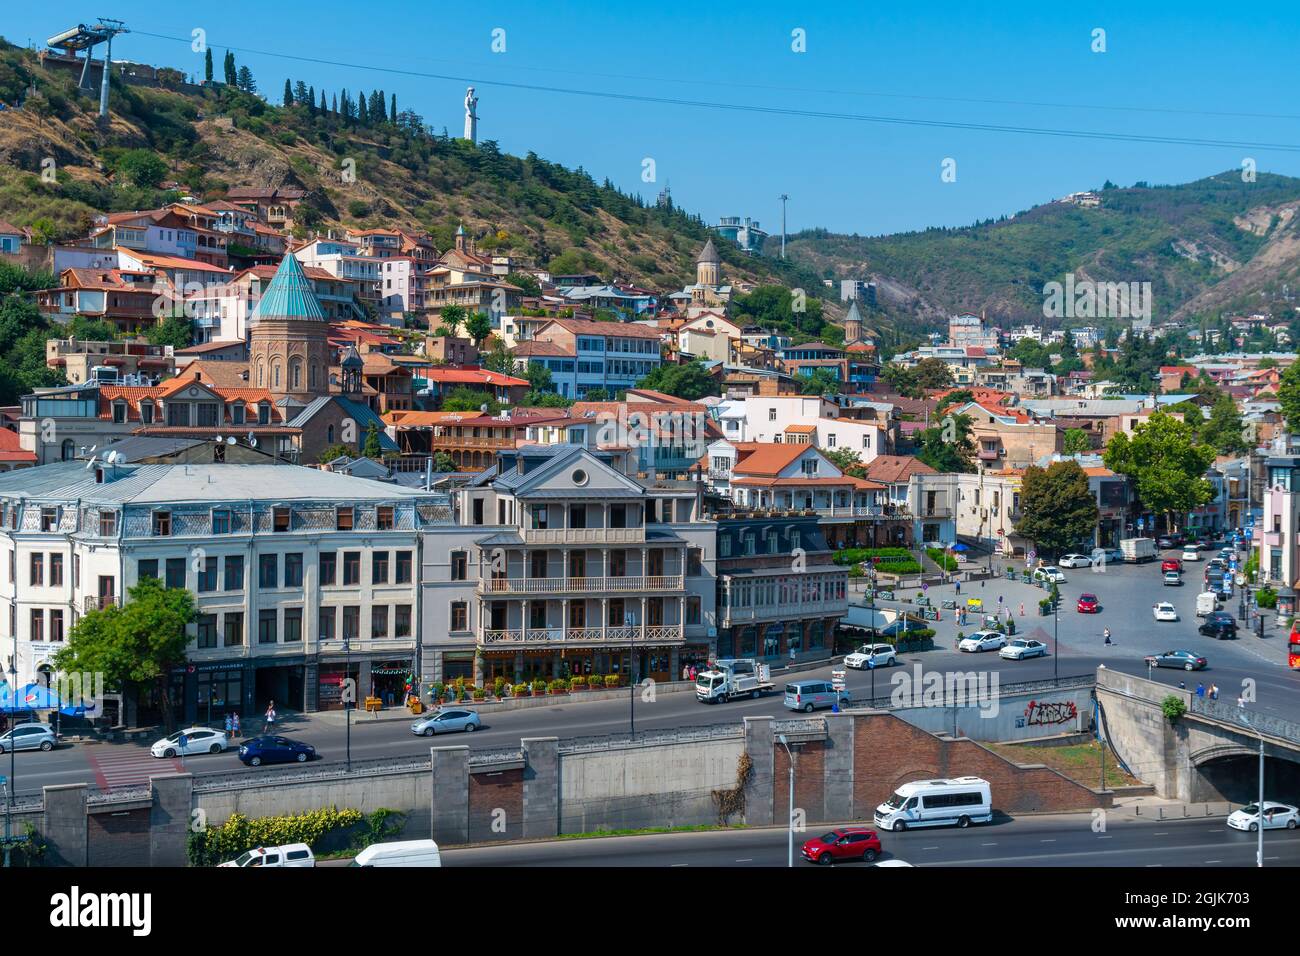 Tbilissi, Géorgie - 25 août 2021 : vue magnifique sur la vieille ville de Tbilissi, Abanotubani. Déplacement Banque D'Images